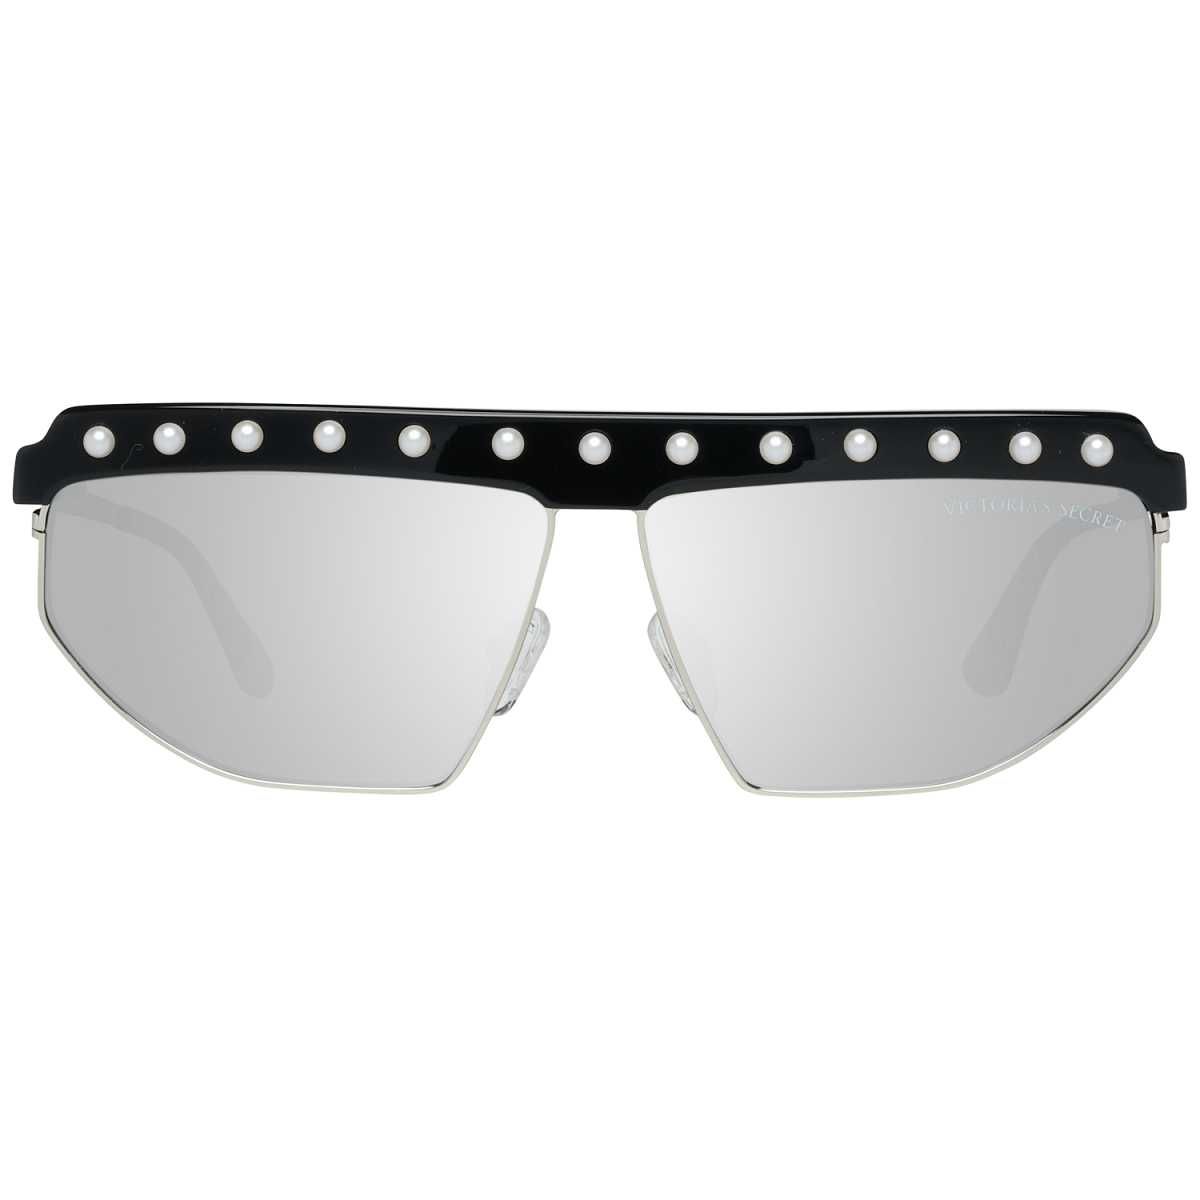 VICTORIA'S SECRET – Огледални слънчеви очила "BLACK & WHITE" MIRRORED